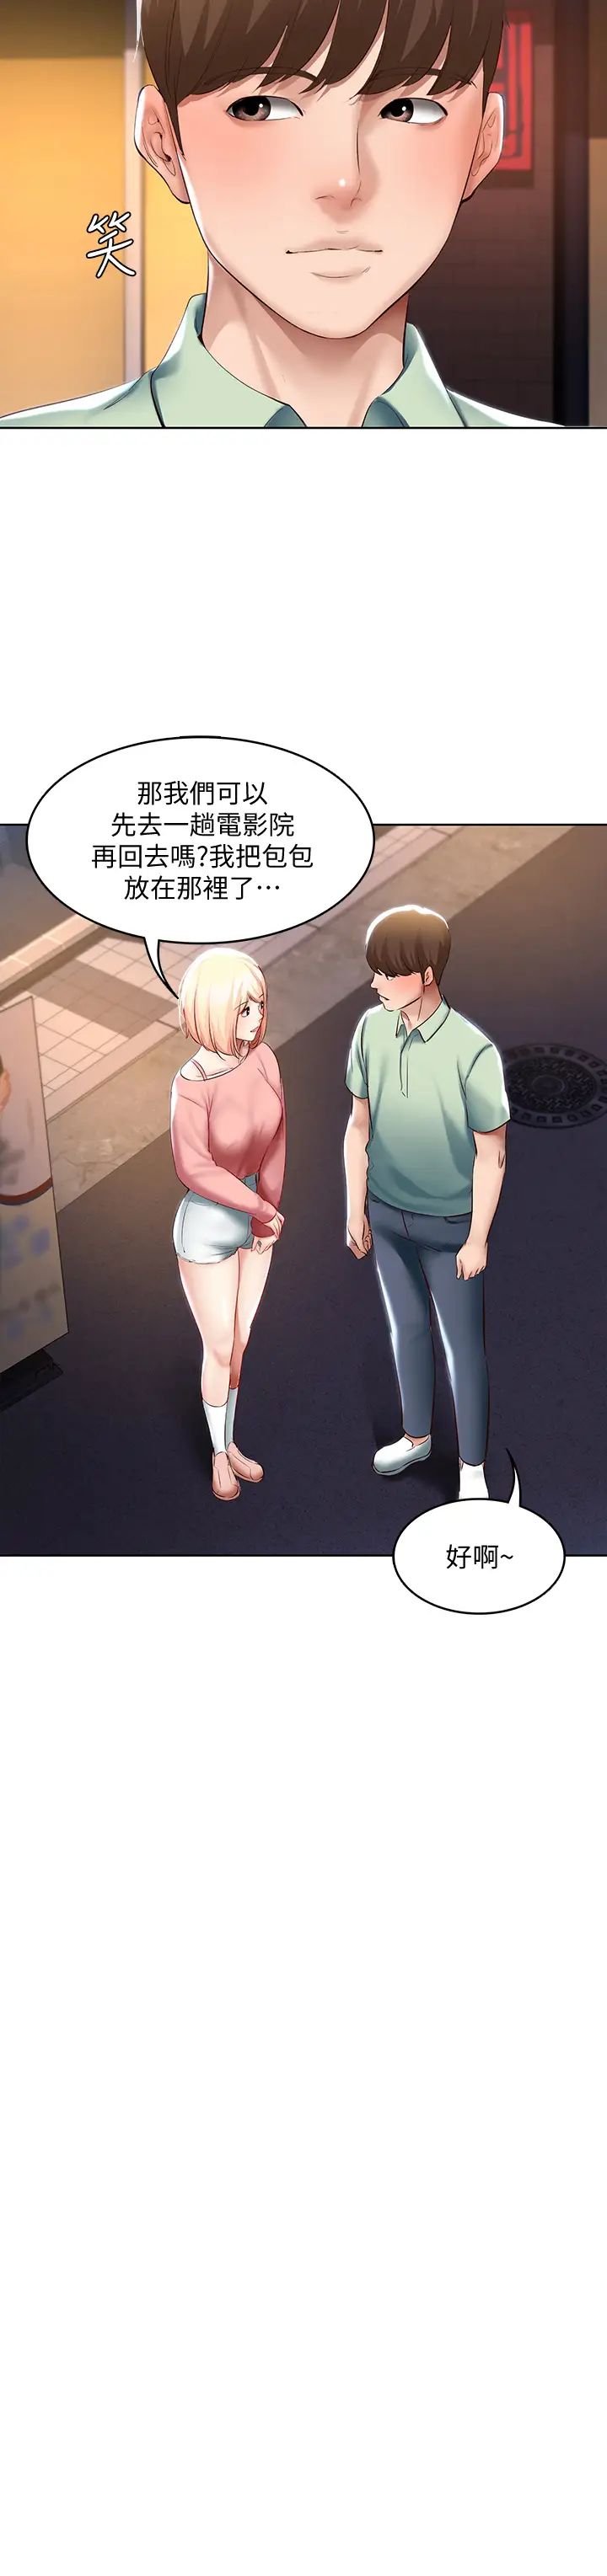 韩国污漫画 寄宿日記 第63话培琳的直球诱惑 34